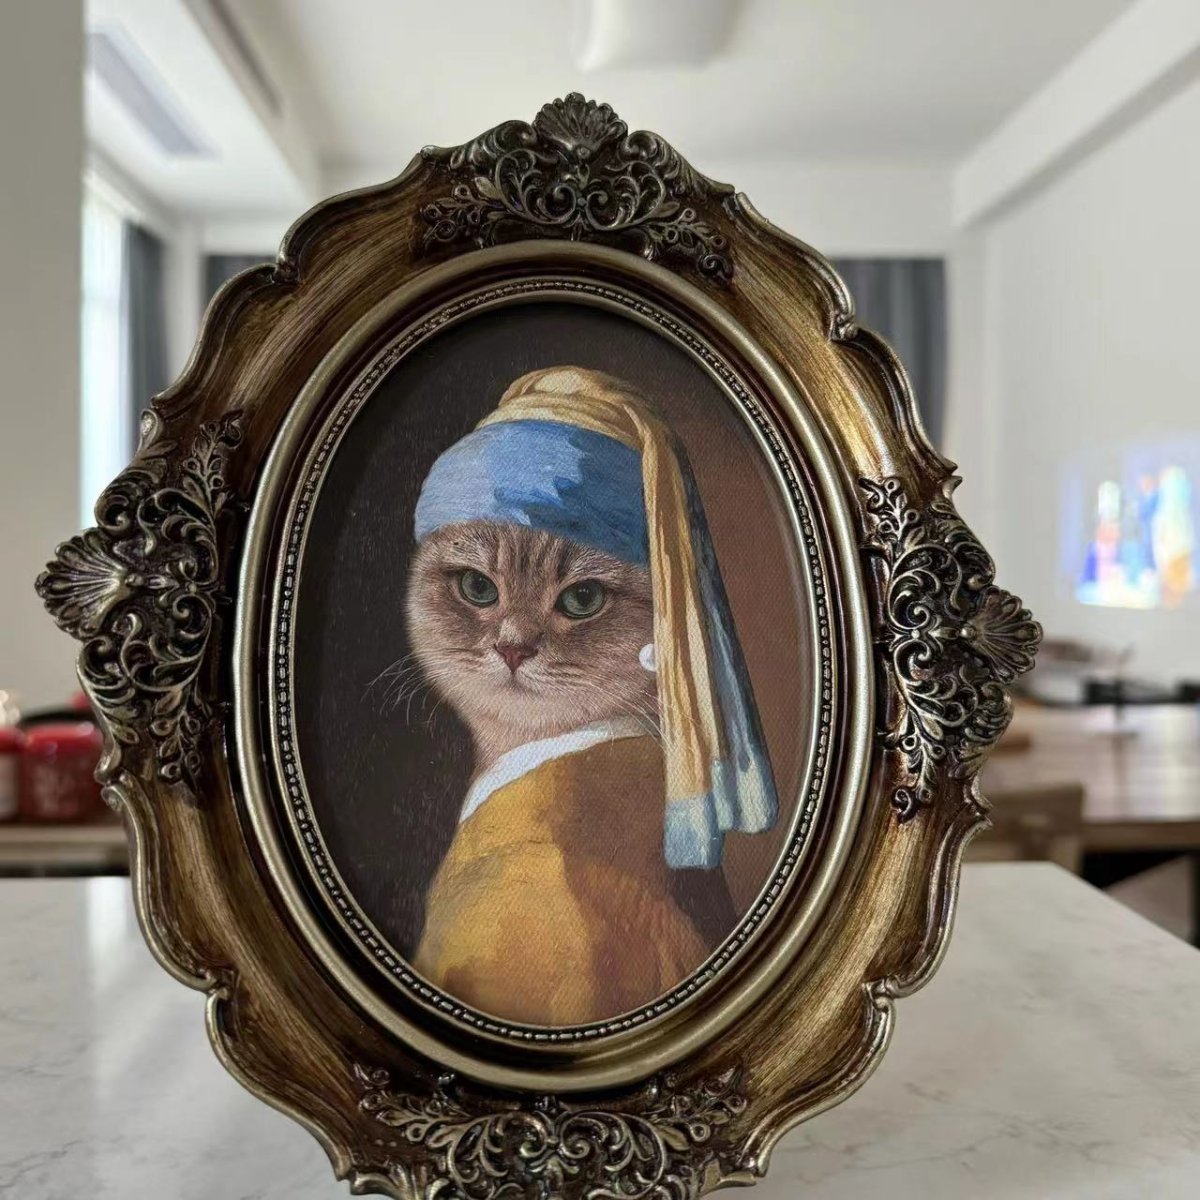 Place Custom Pet Portrait With Vintage Frame – Female Pets